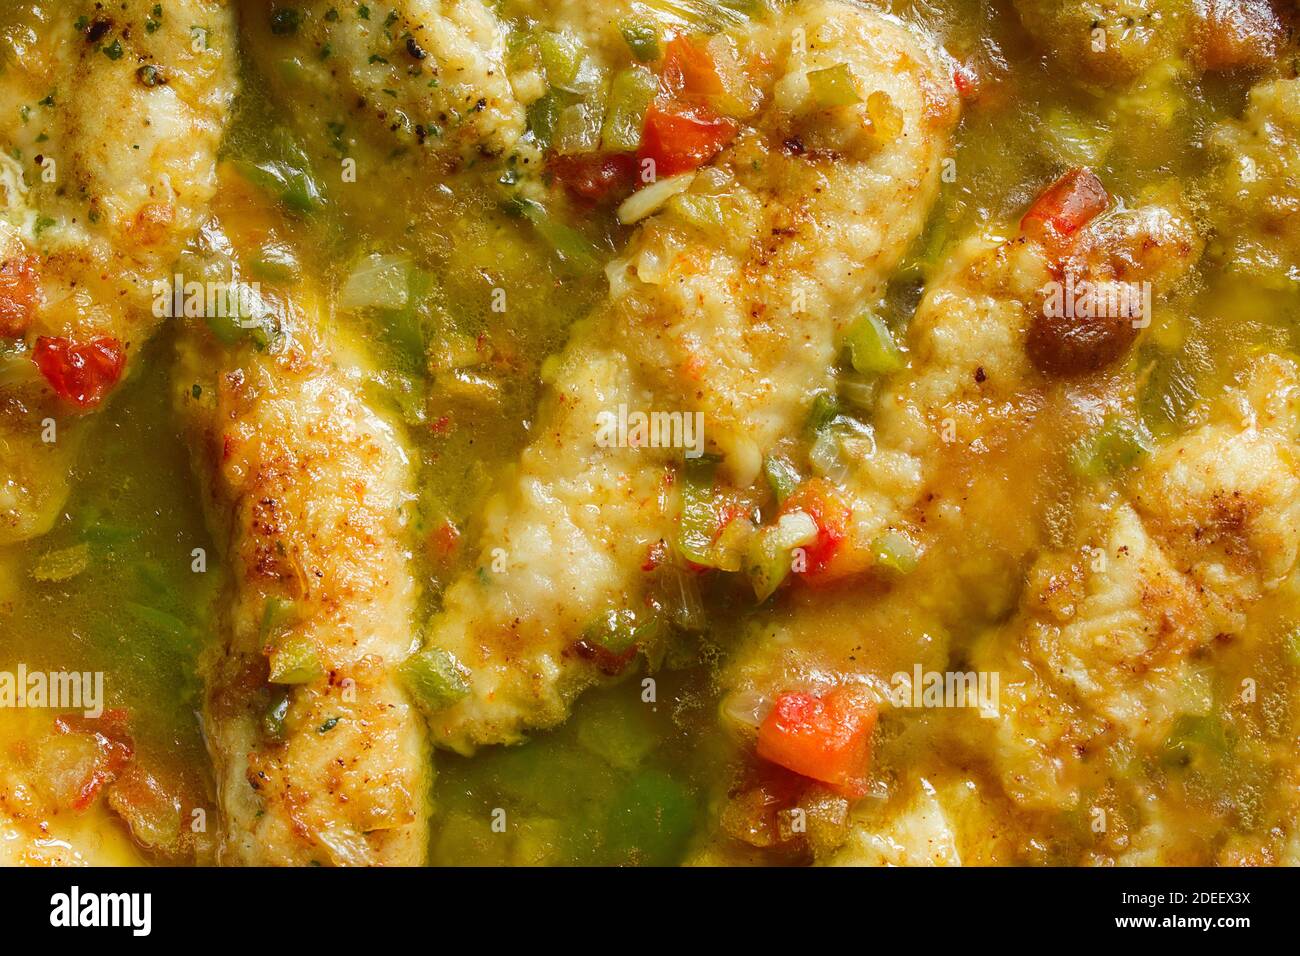 Gros plan d'un délicieux filet de poulet sauce verte avec persil, huile d'oignon et poivron rouge. Recettes de cuisine saines et faciles. Banque D'Images